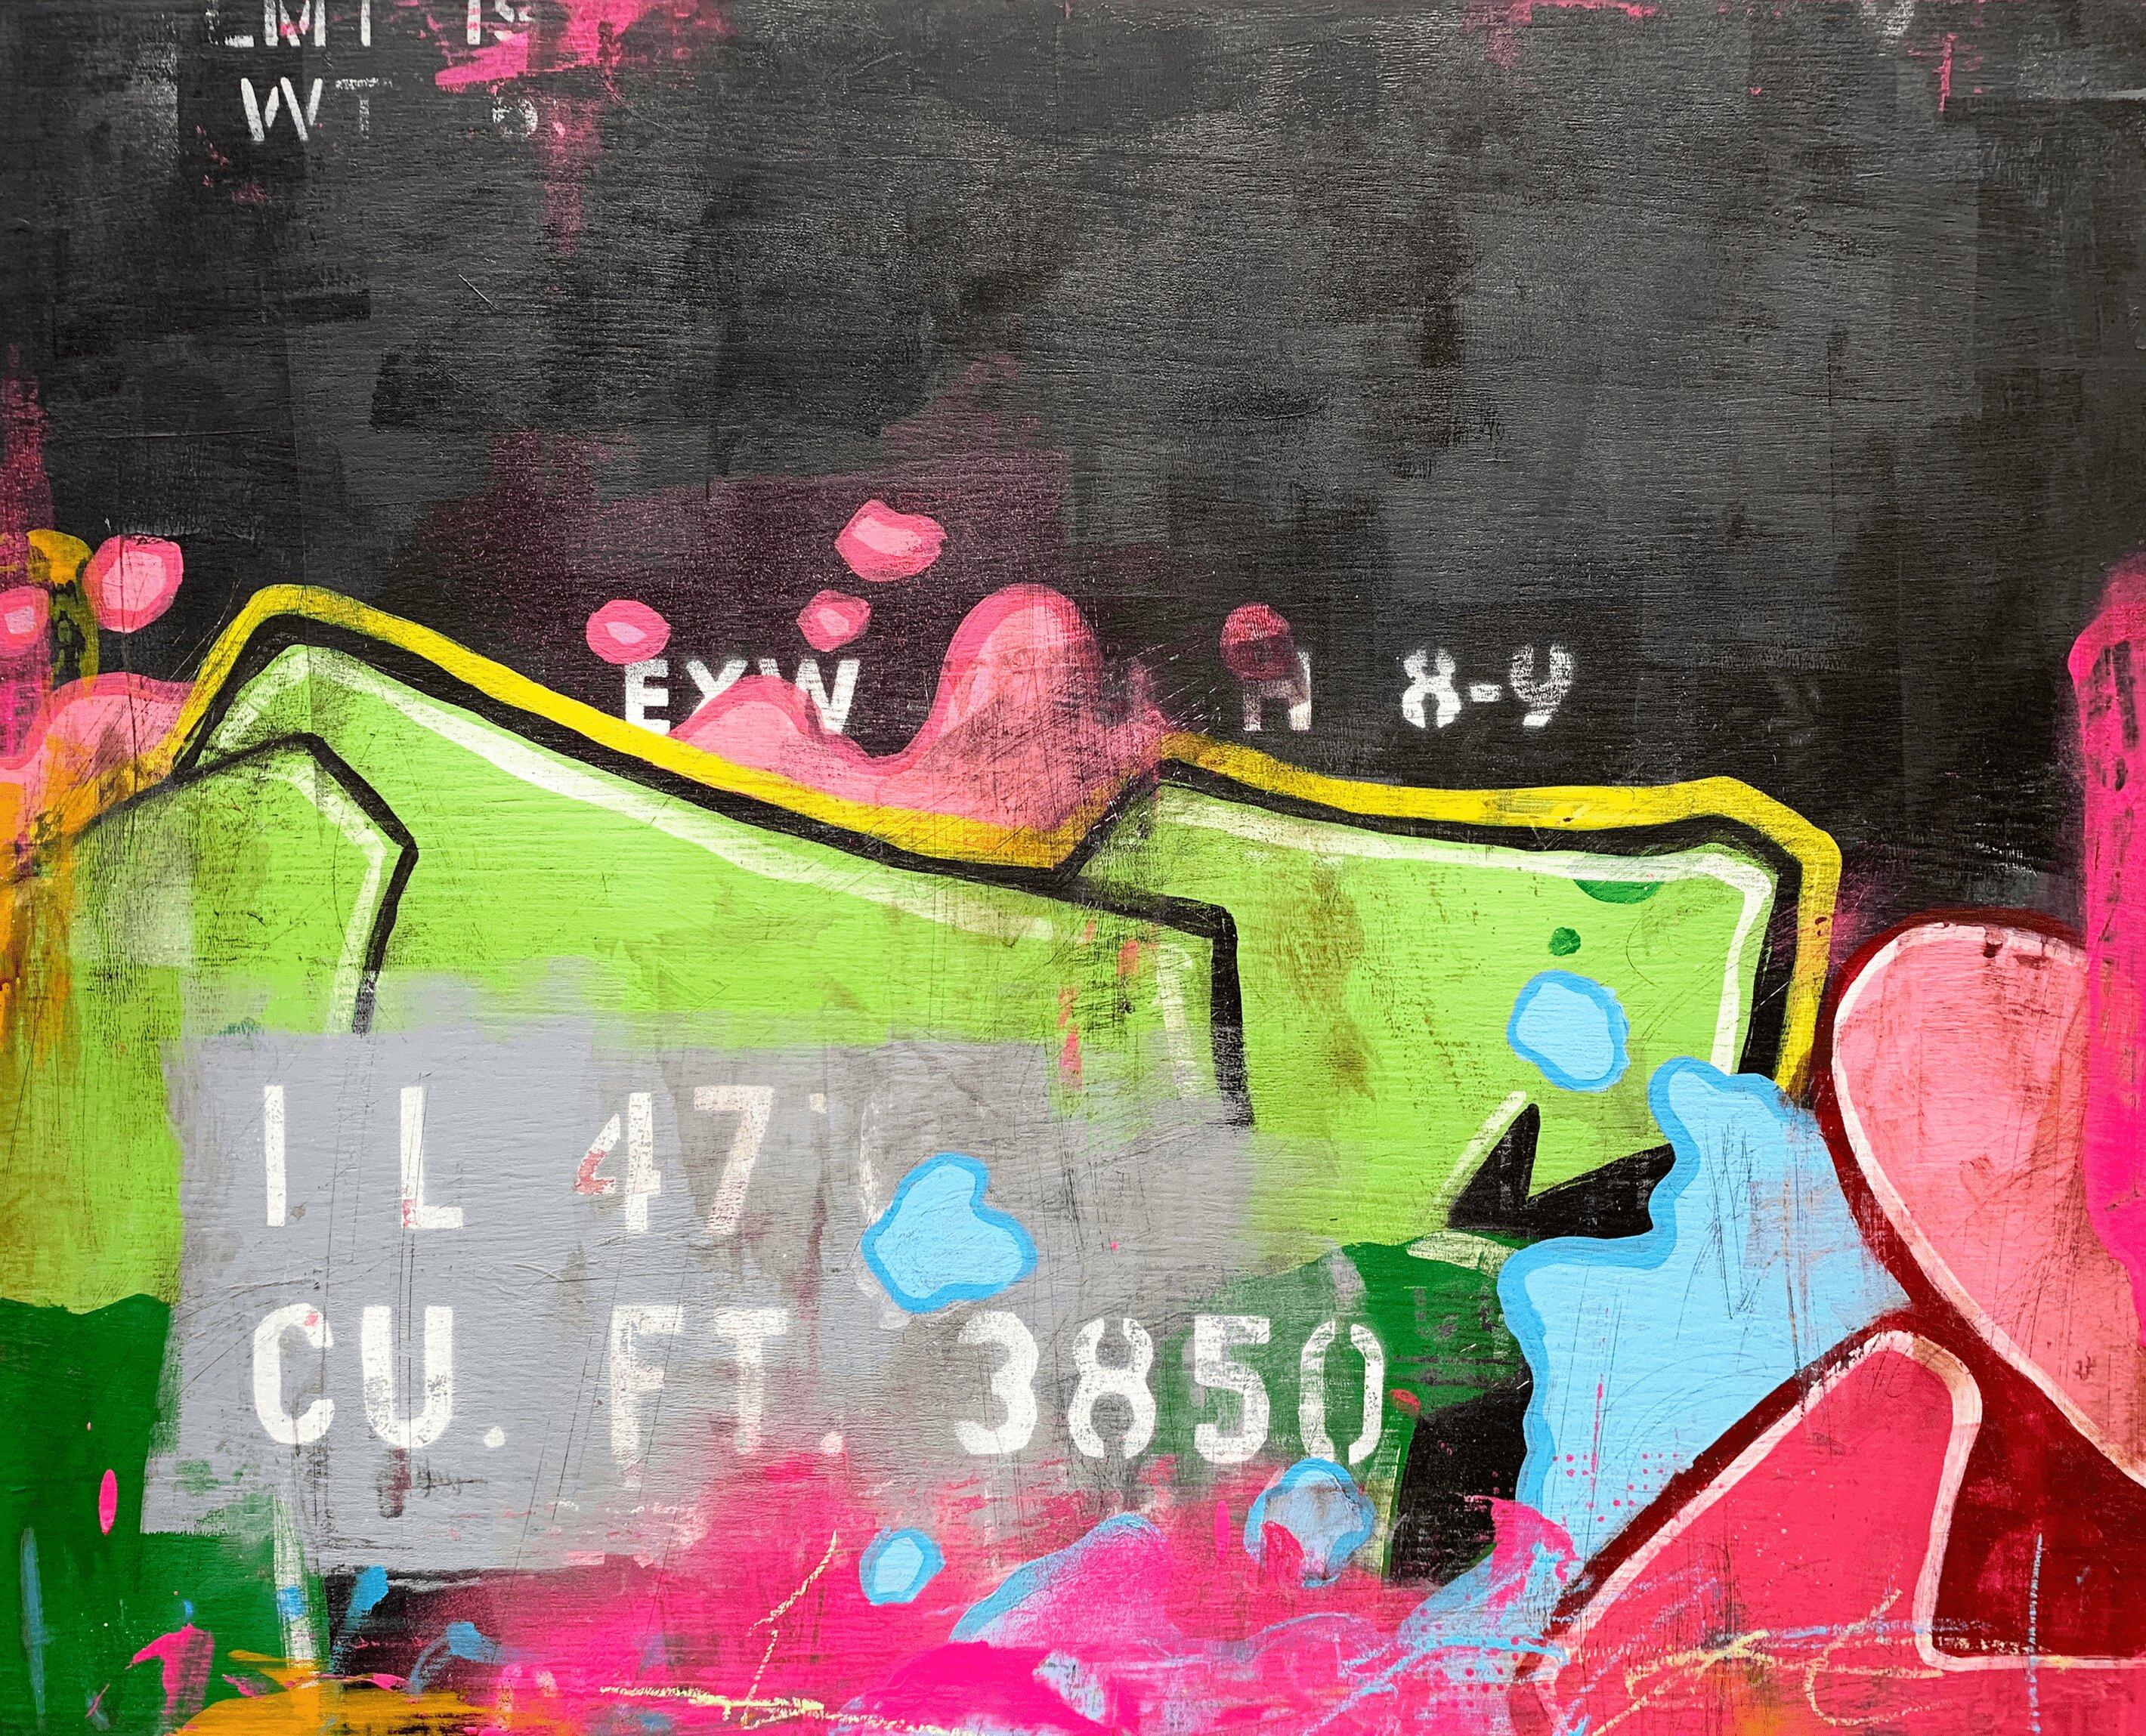 Trouver la clarté - Peinture murale Urban Graffiti